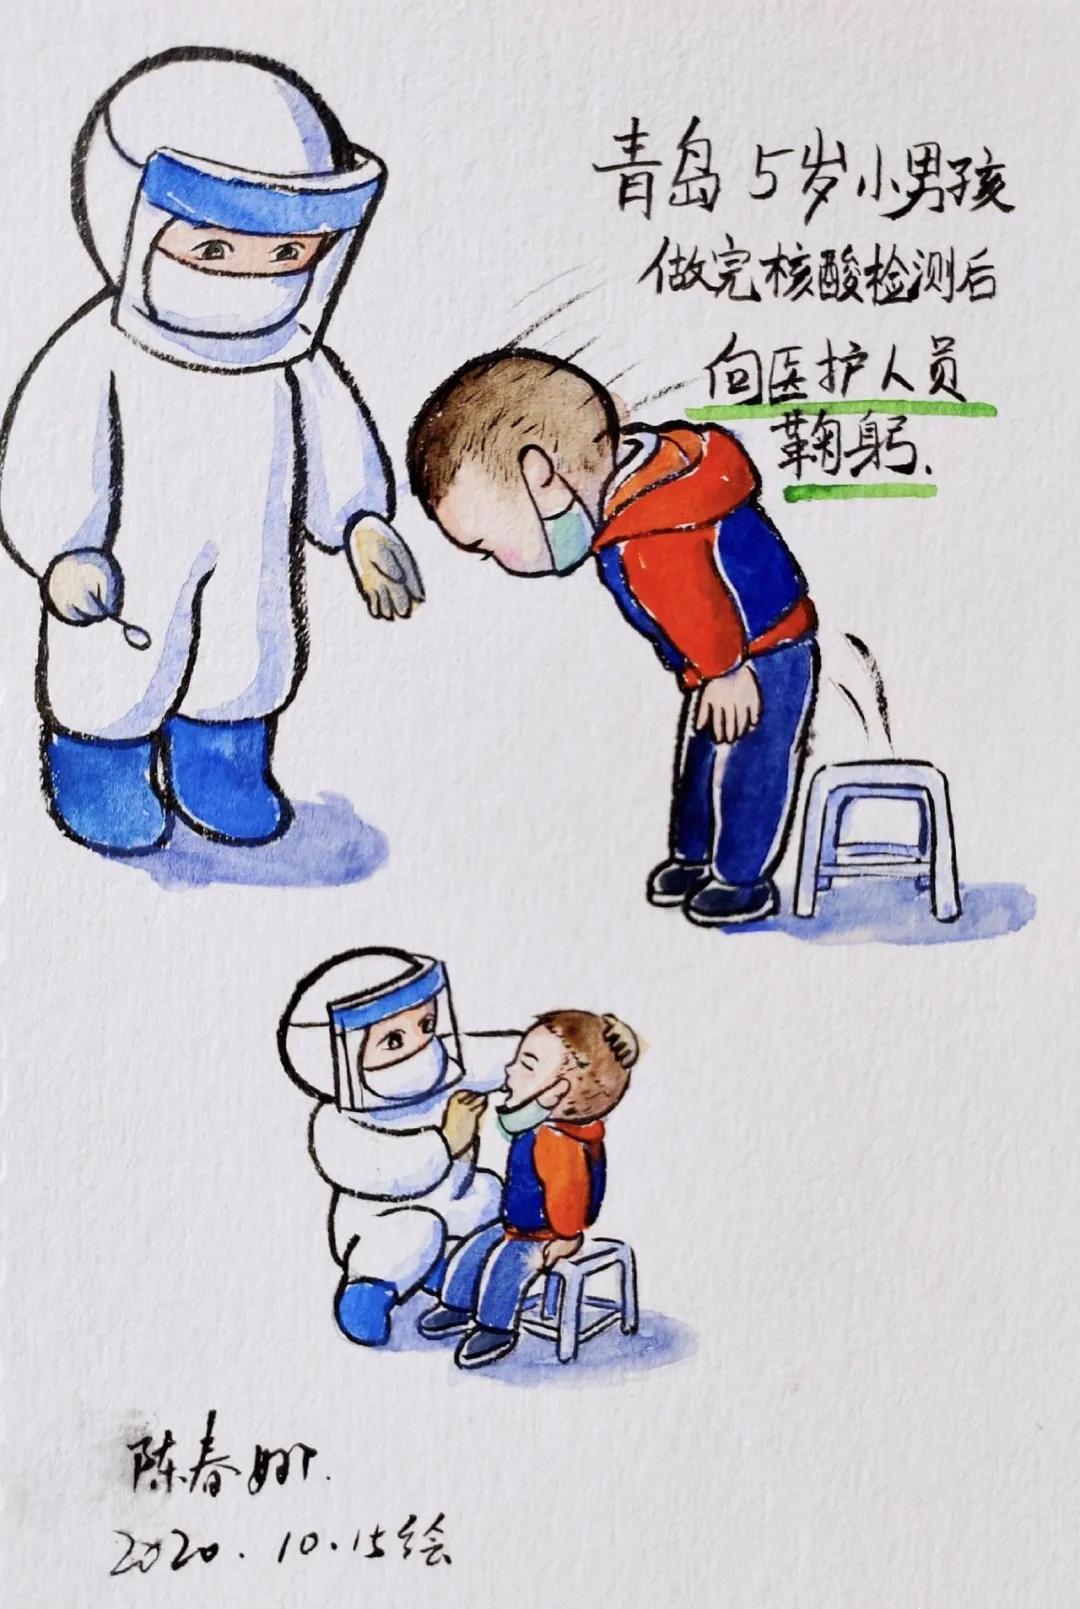 陈春娜笔下做完核酸检测向医护人员鞠躬致敬的5岁小男孩.